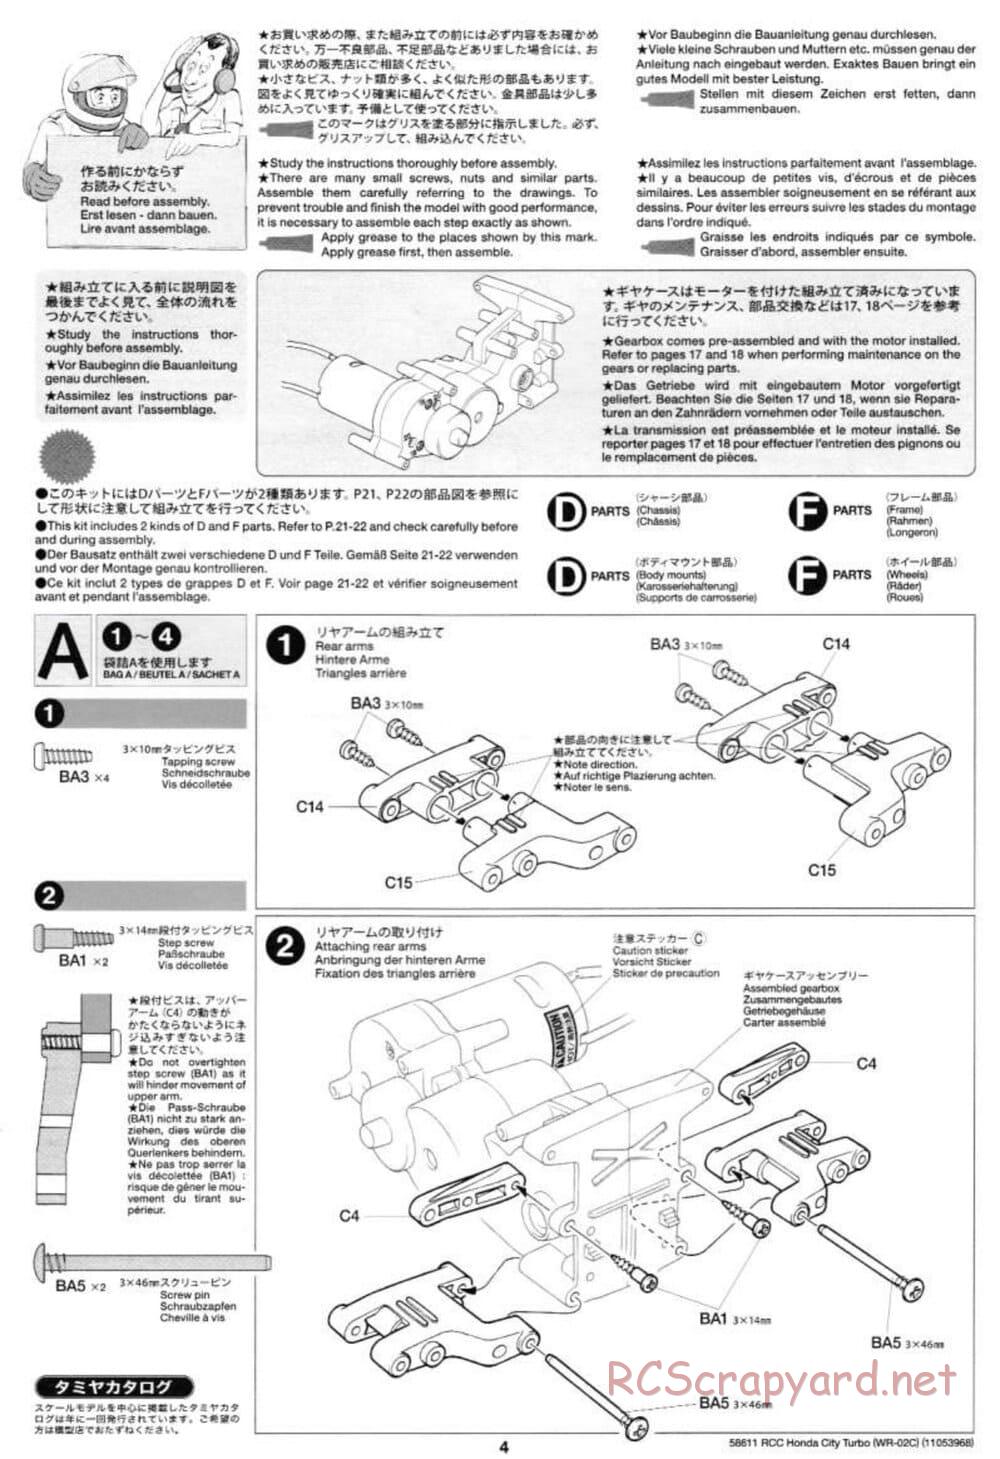 Tamiya - Honda City Turbo - WR-02C Chassis - Manual - Page 4